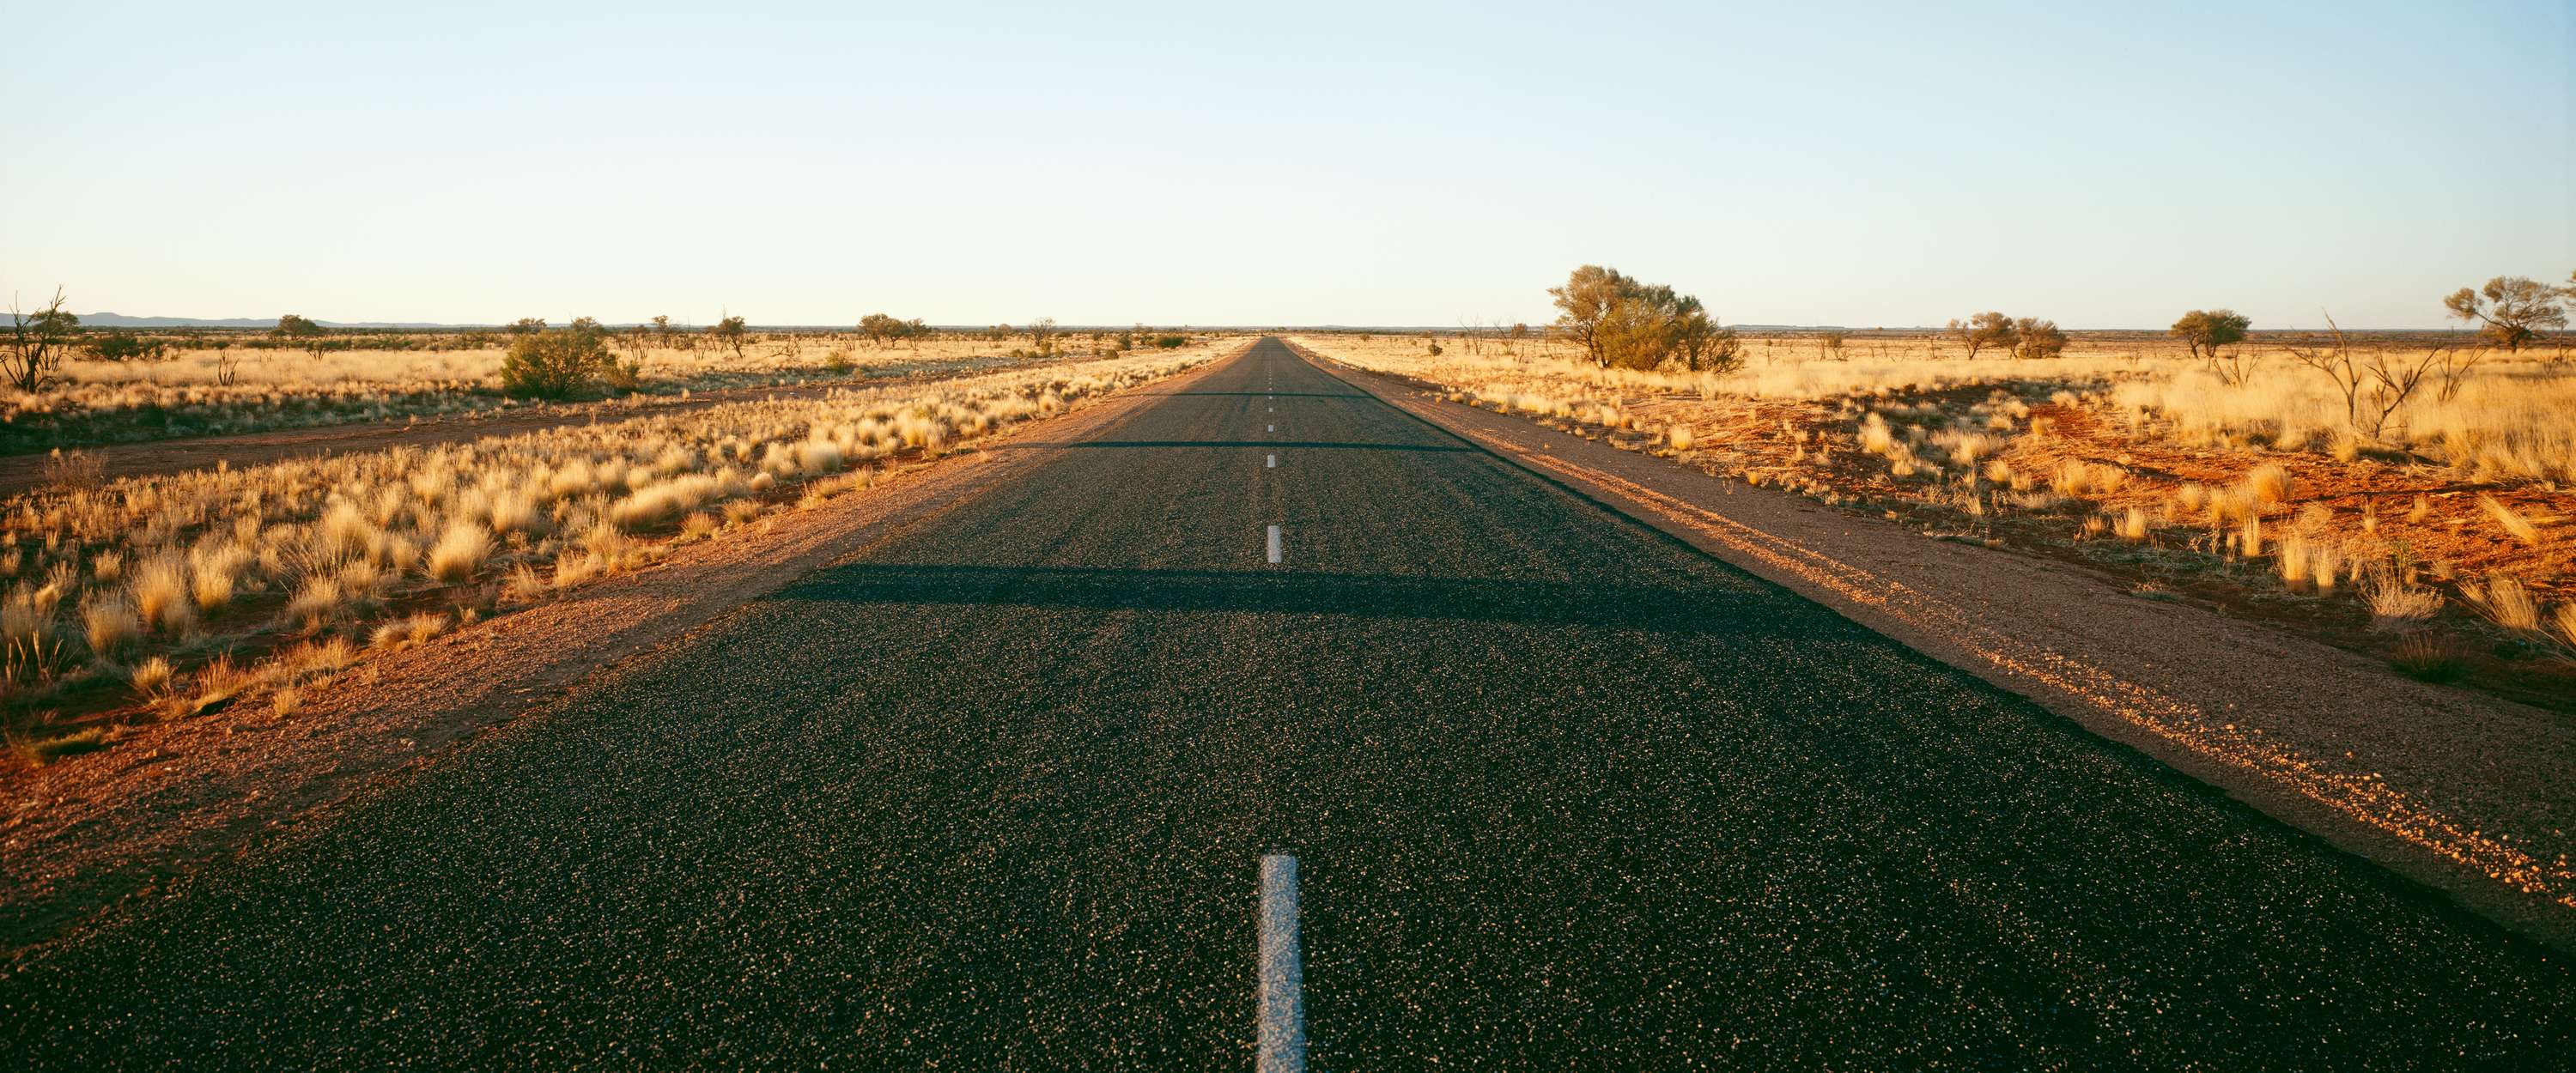             Fotomurali Desert Highway e Far Horizon
        